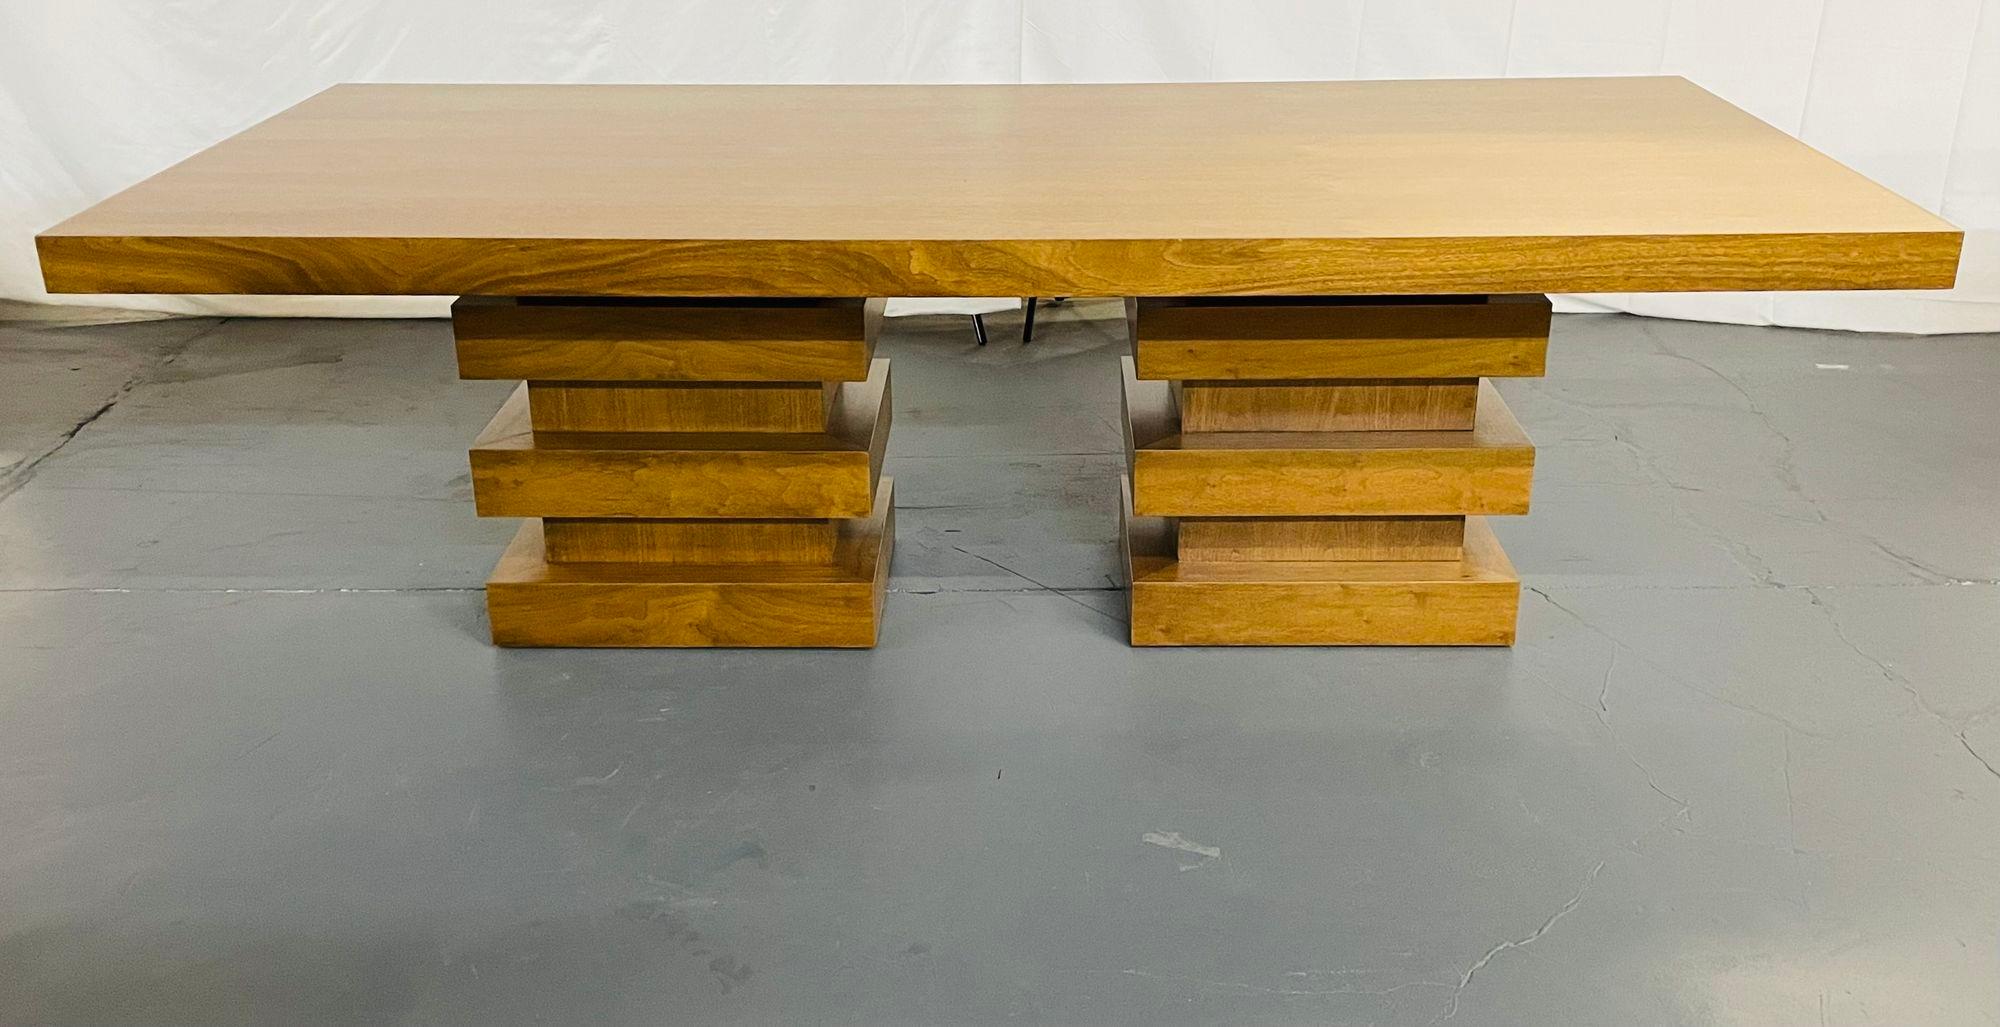 Table de salle à manger / conférence moderne en chêne à double piètement, design géométrique 

Un plateau de table en dalles de chêne massif reposant sur des socles géométriques empilés en chêne massif. Cette table est de forme très moderne avec une